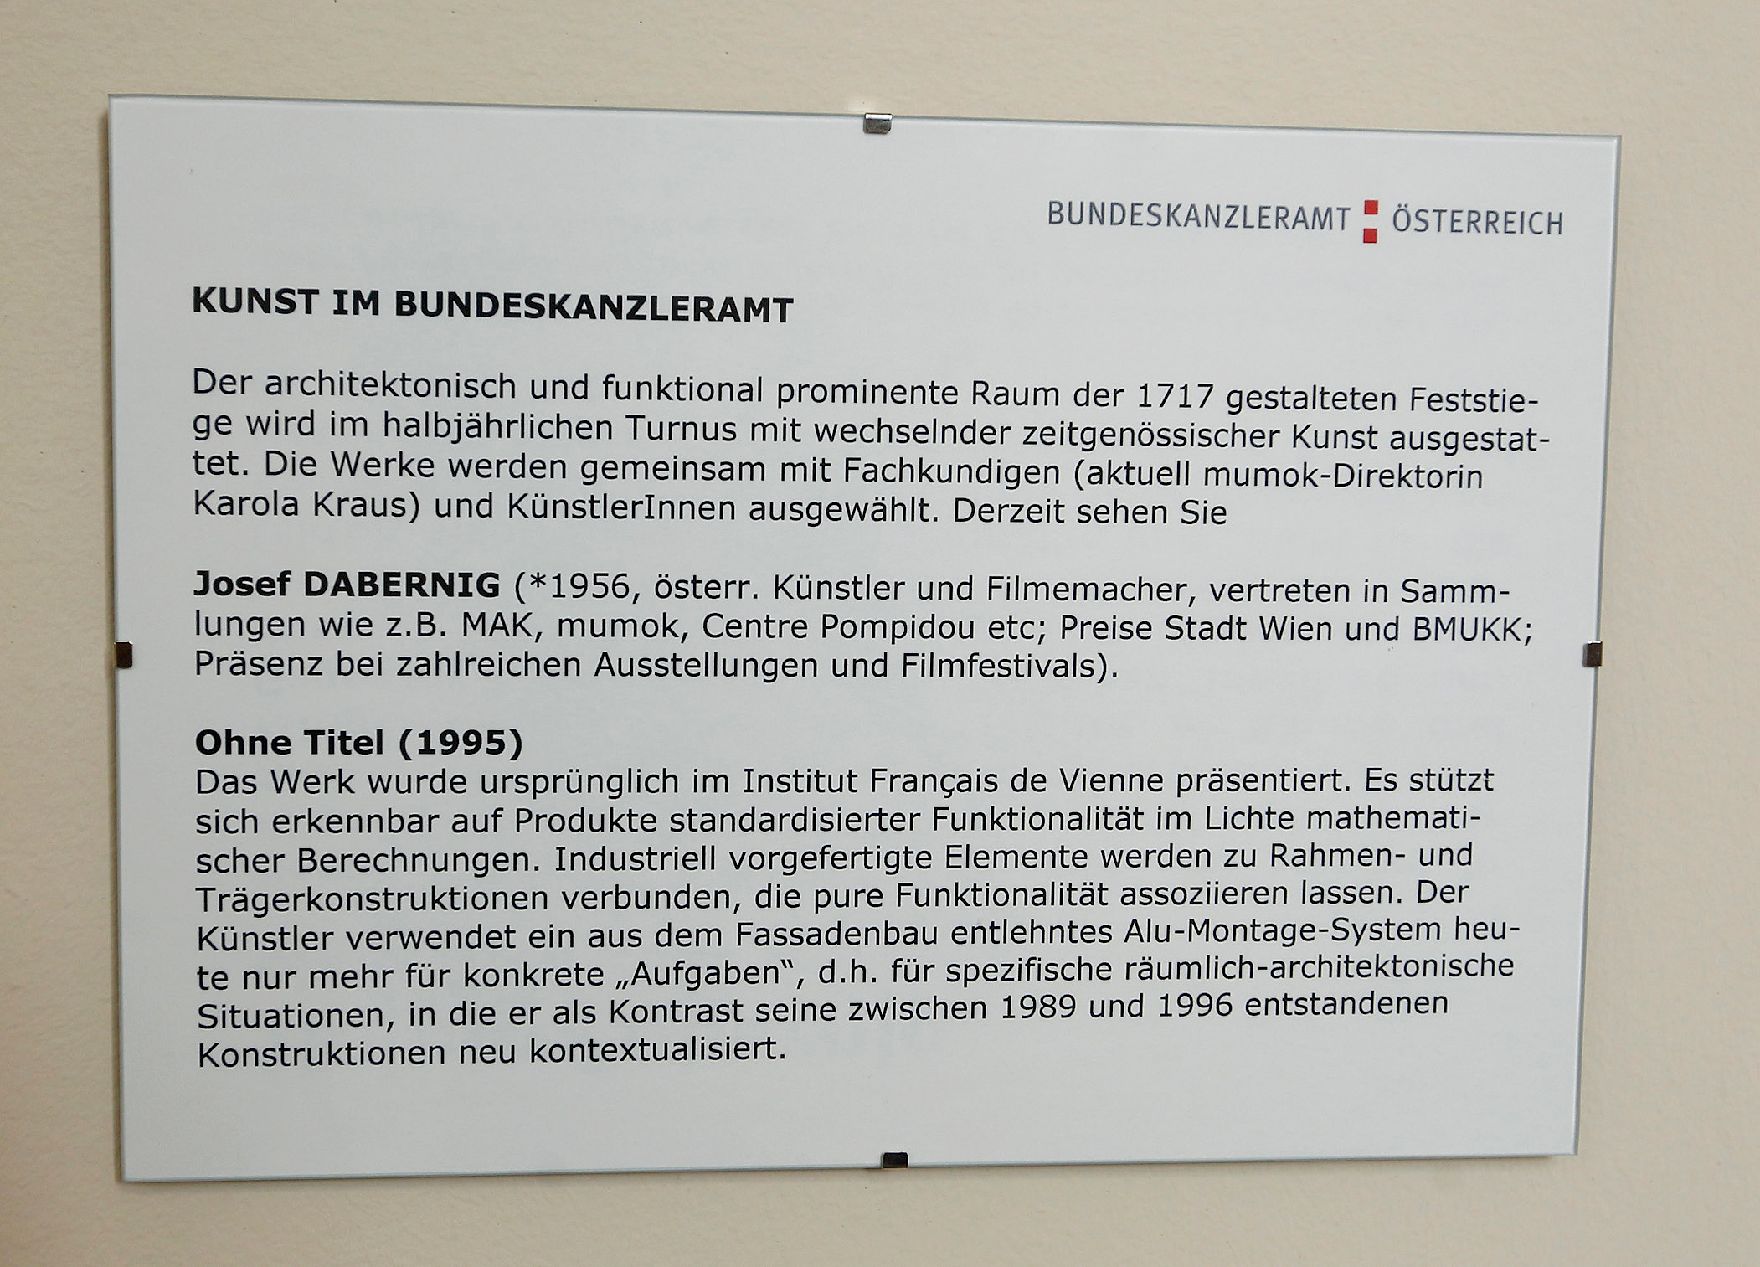 Infotafel zu dem Werk "Ohne Titel" von Josef Dabernig ausgestellt auf der Feststiege im Bundeskanzleramt im Jahr 2012.